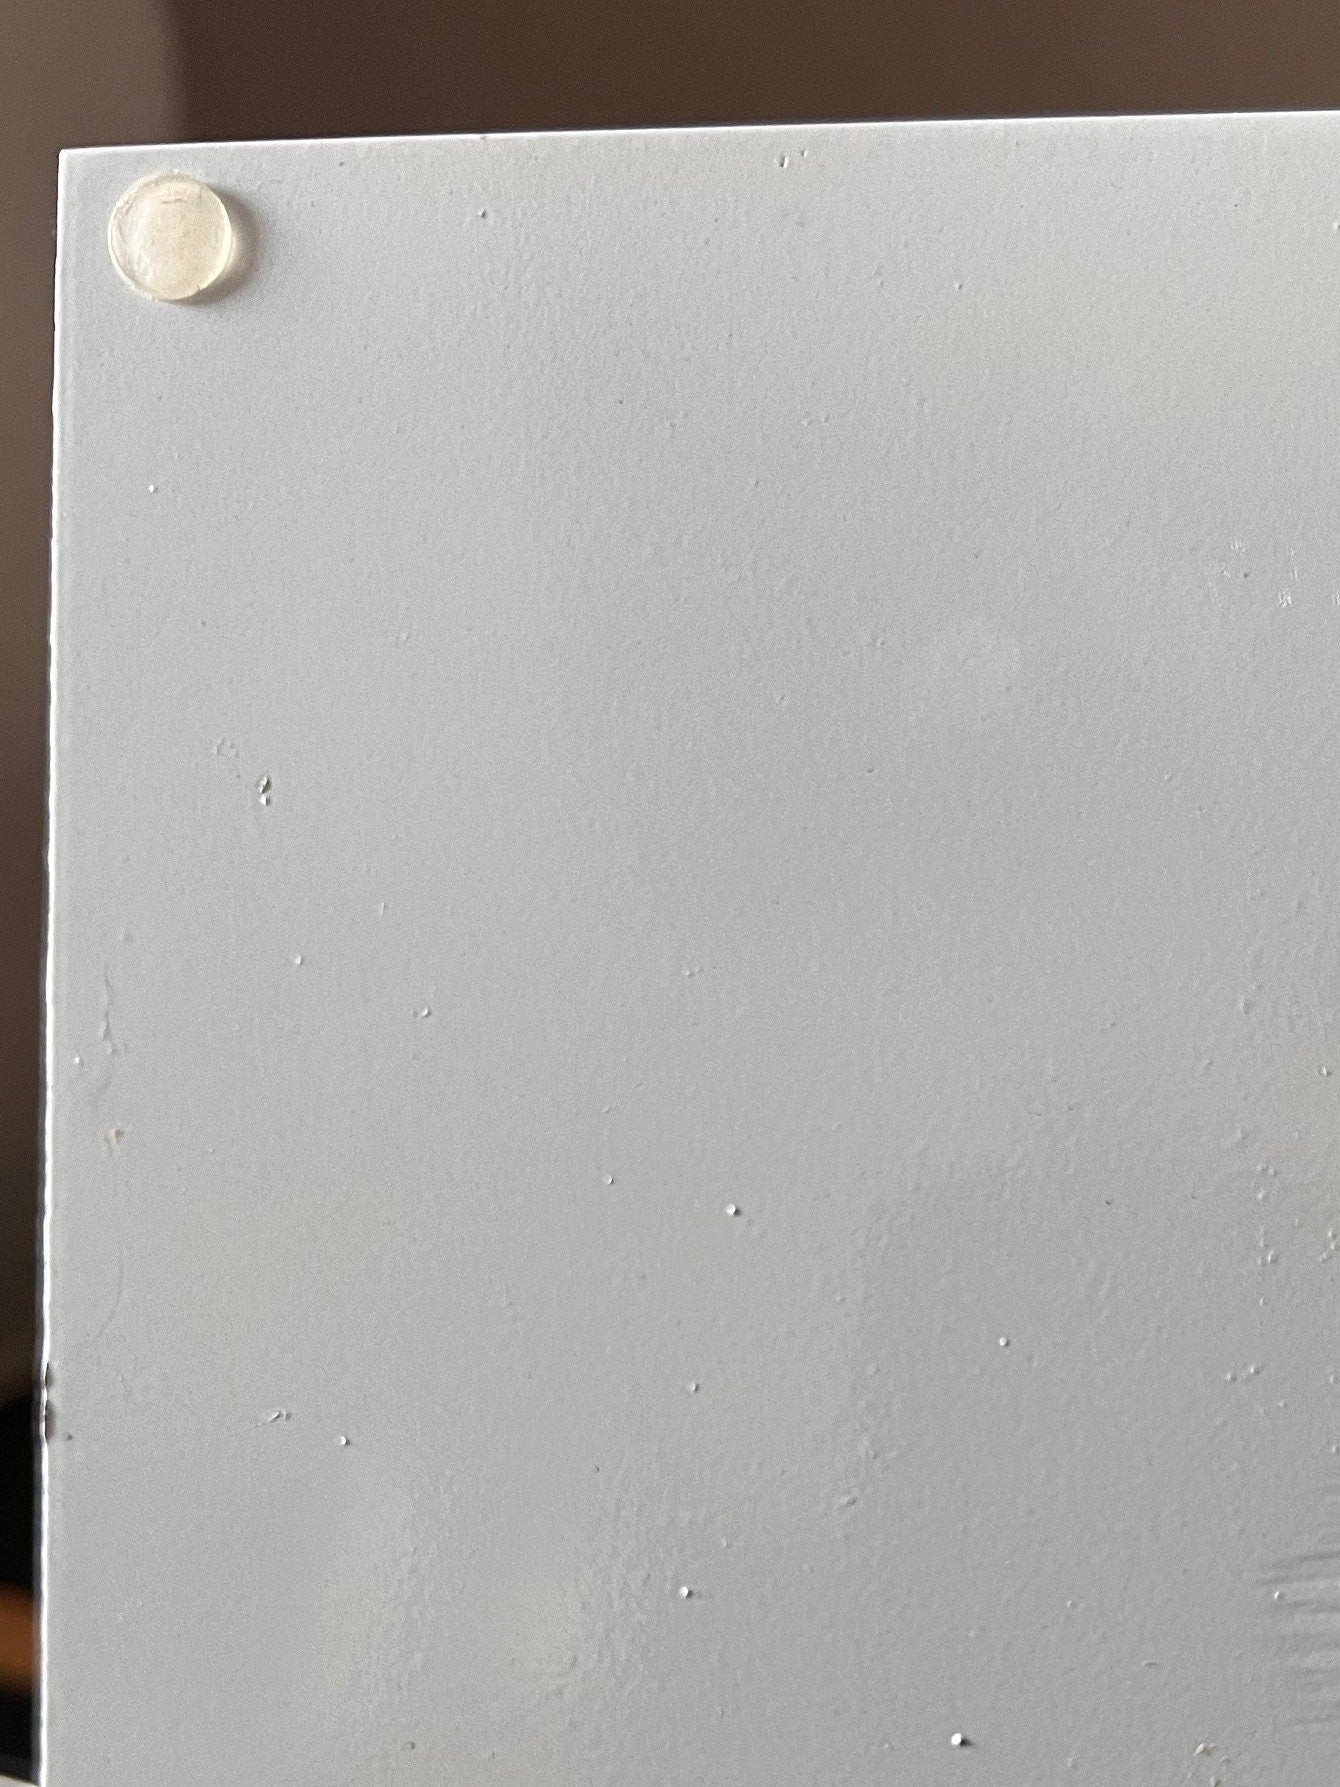 Eleganter Ständer für Wandkranz/ Wandkränze in weiß und schwarz lackiert, mit Gummifüssen, sehr standsicher. Geeignet für Kränze bis 35 cm.